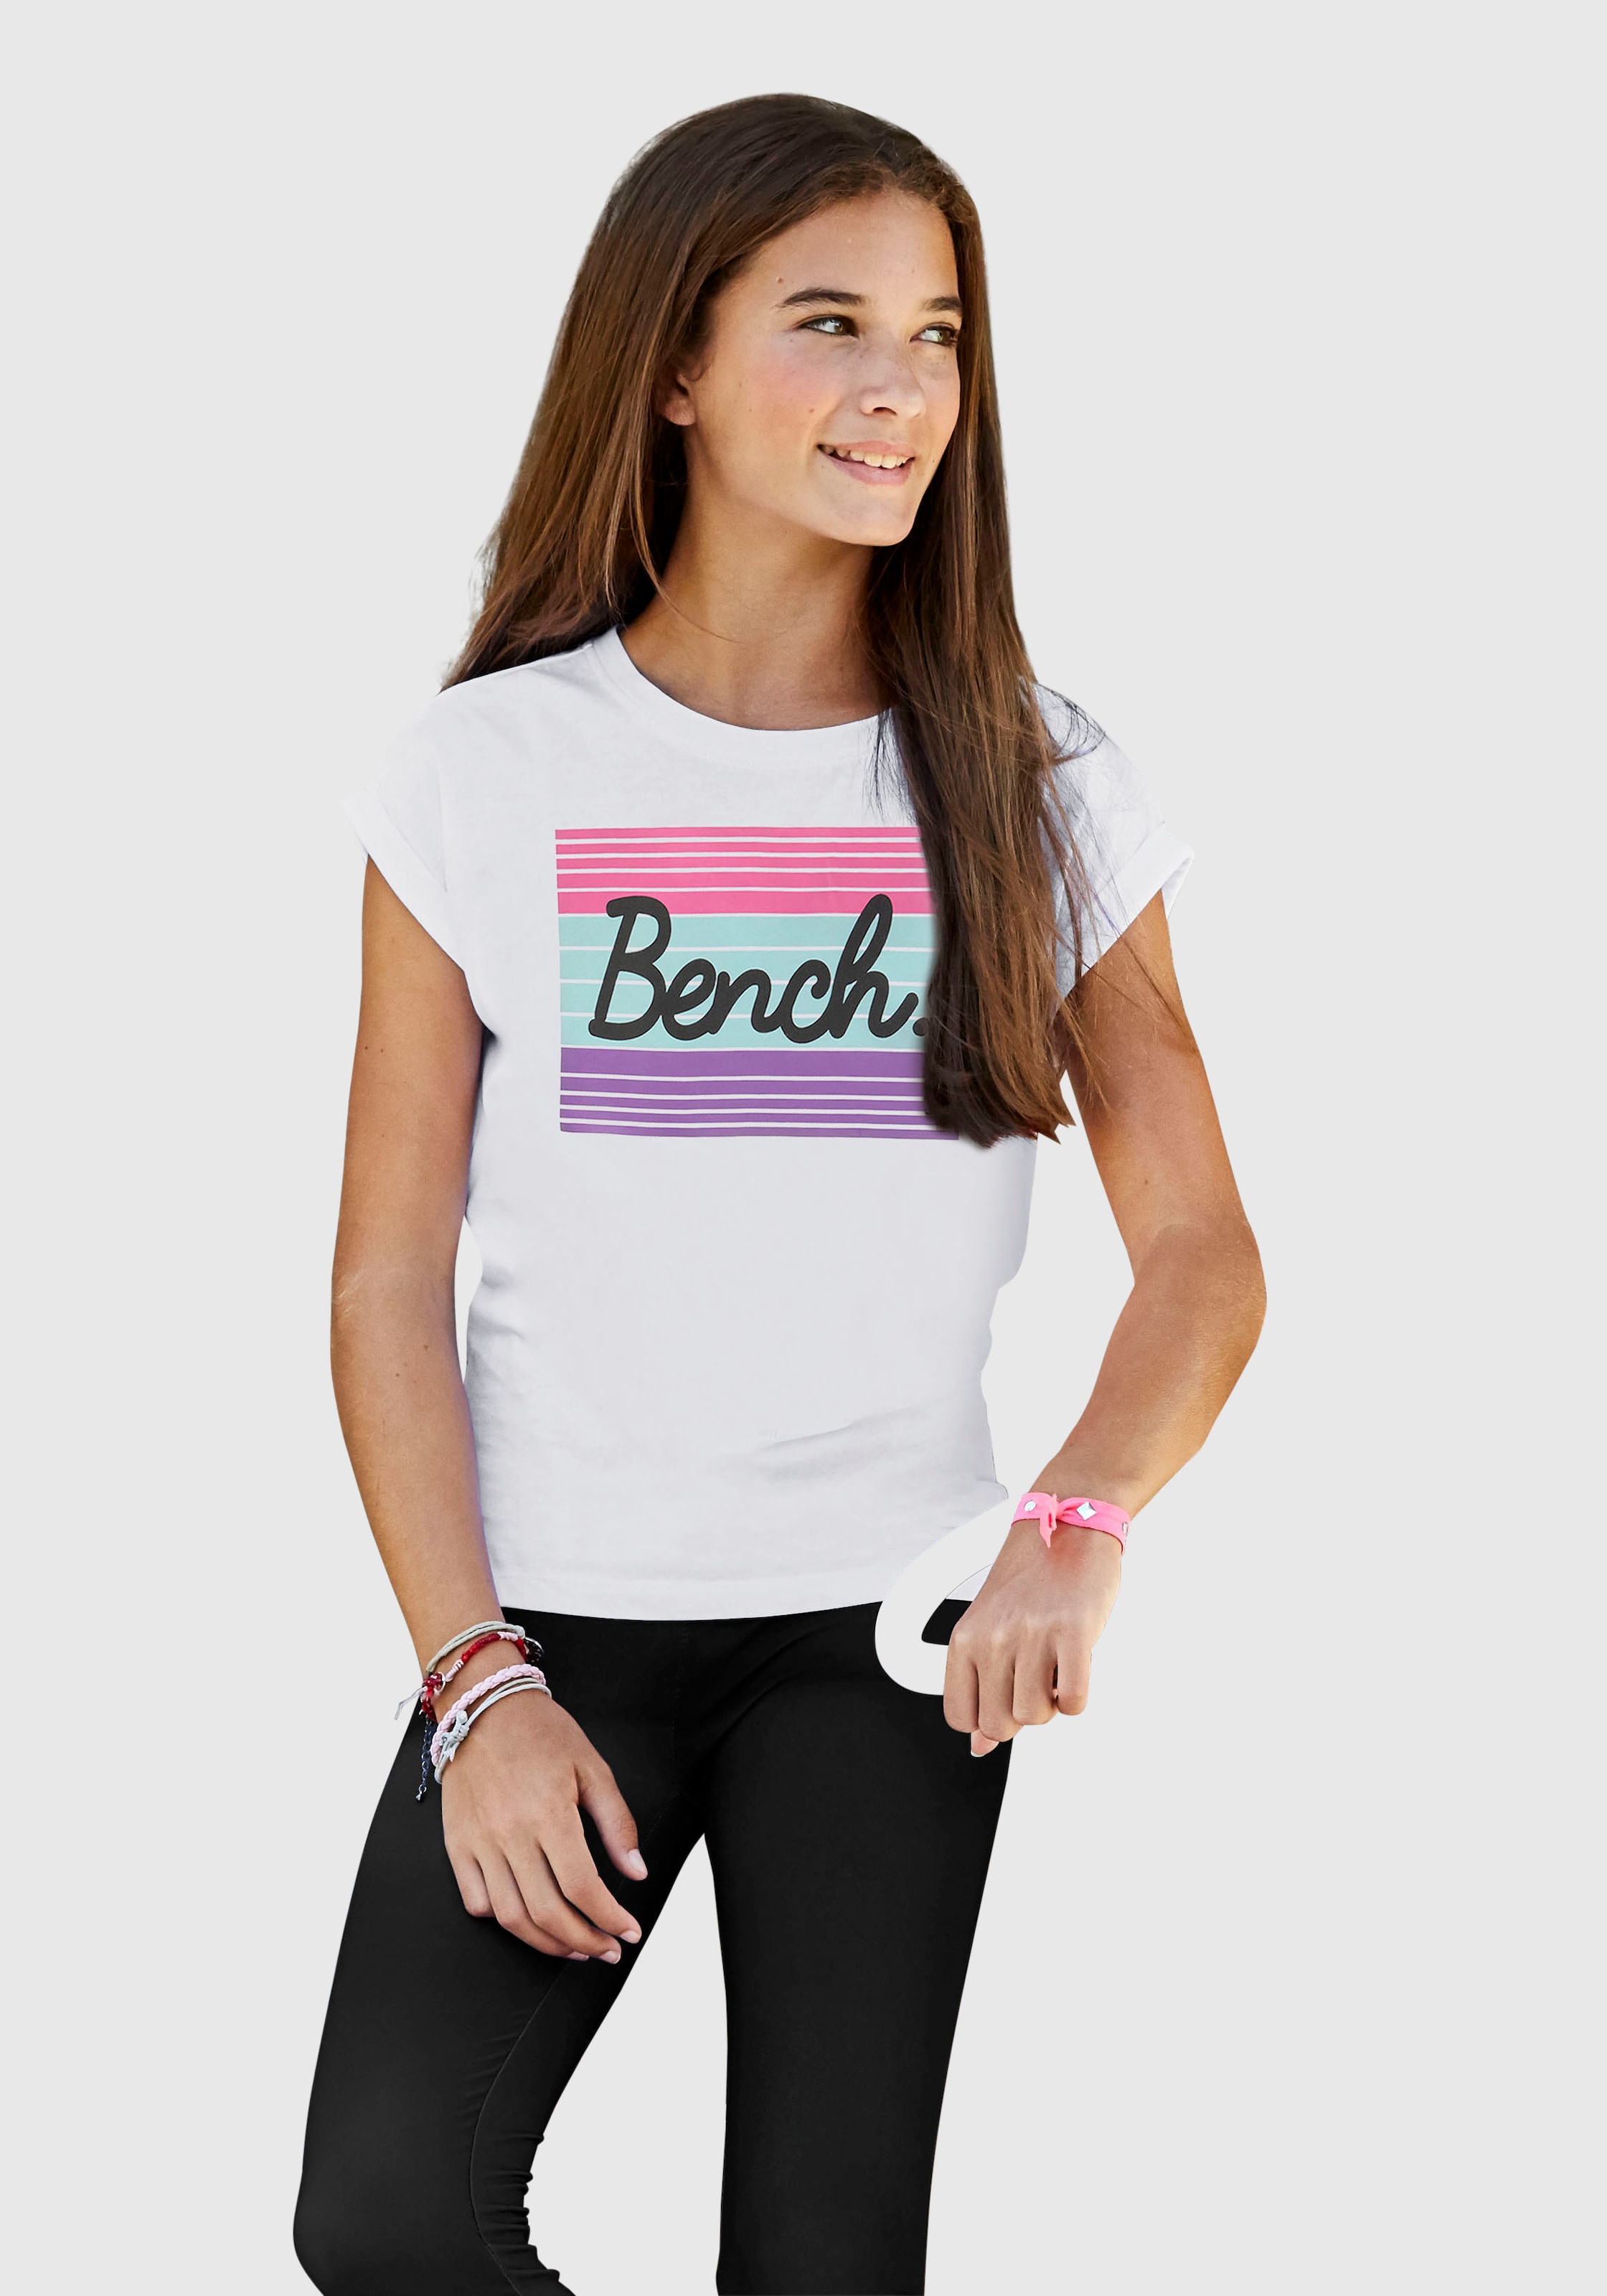 Logodruck mit Acheter T-Shirt, grossem ✌ Bench. en ligne